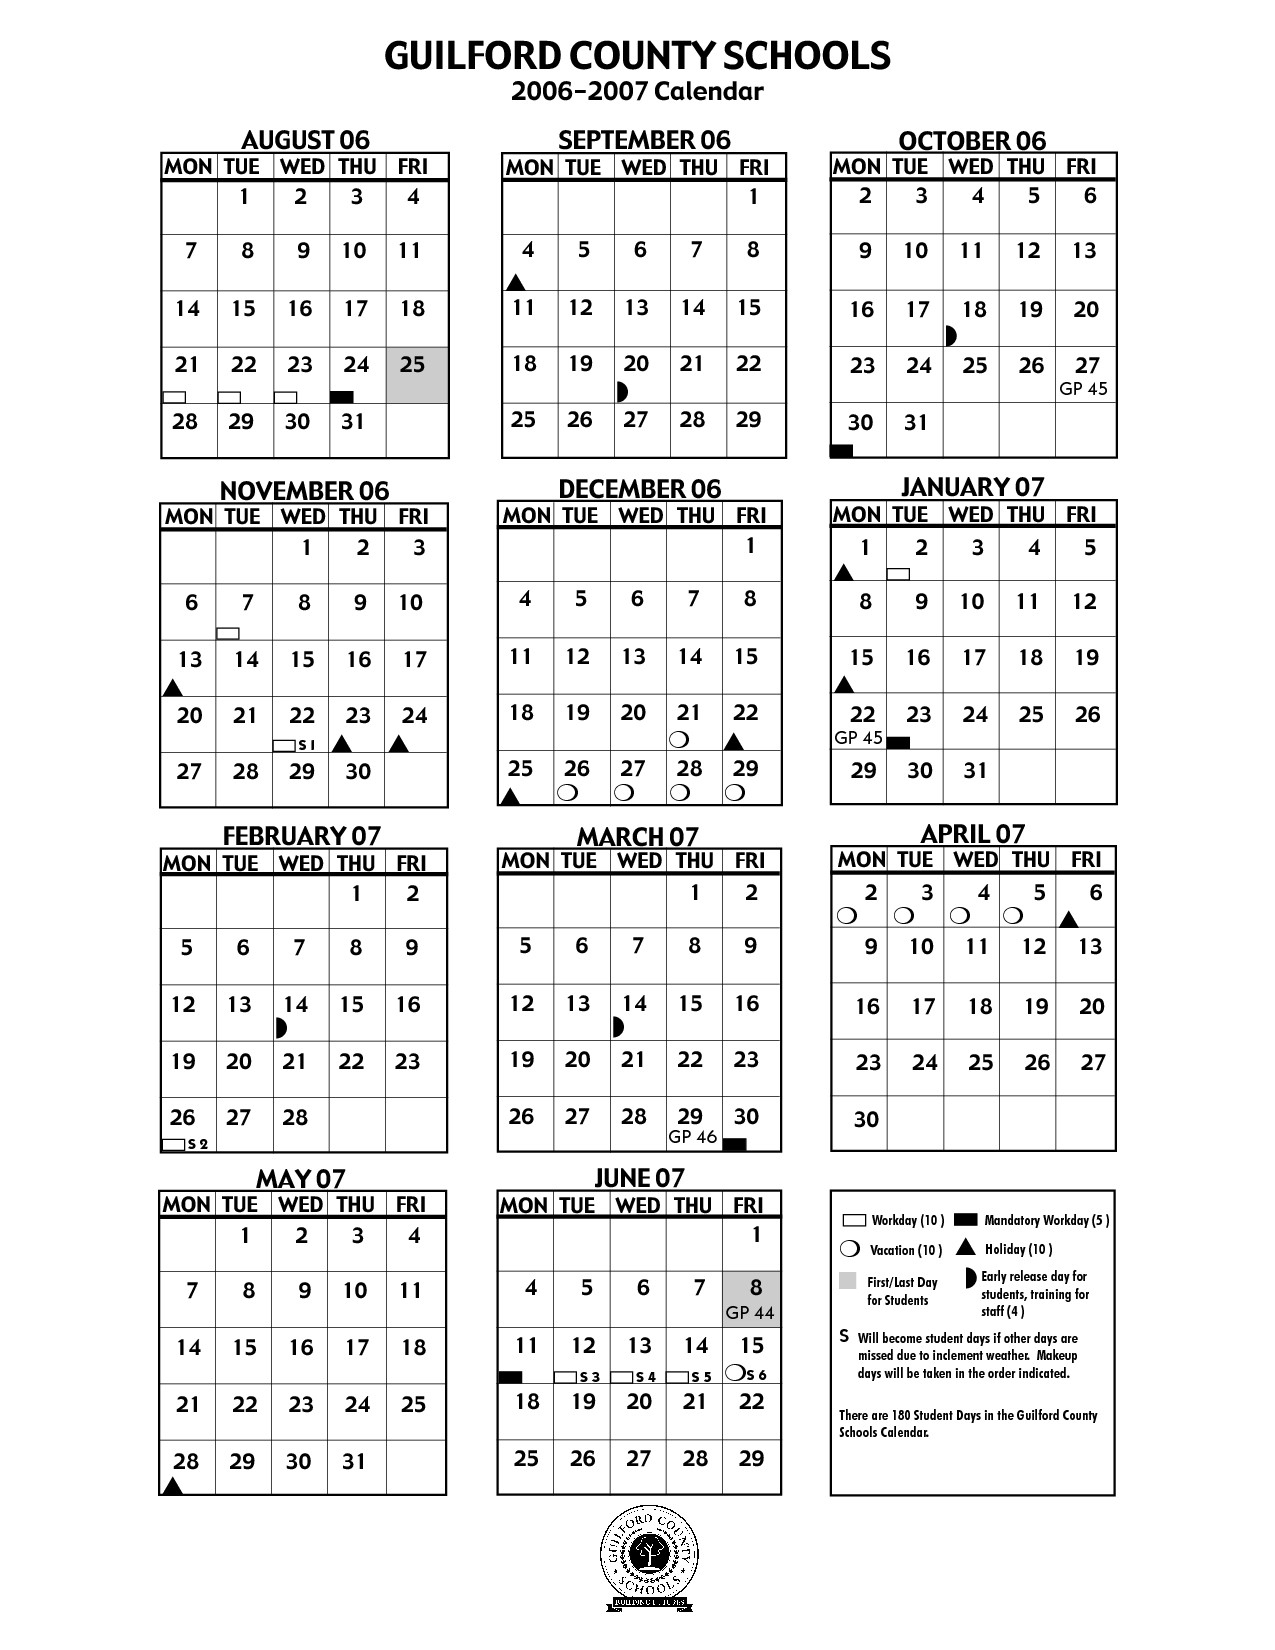 shorecrest-high-school-calendars-shoreline-wa